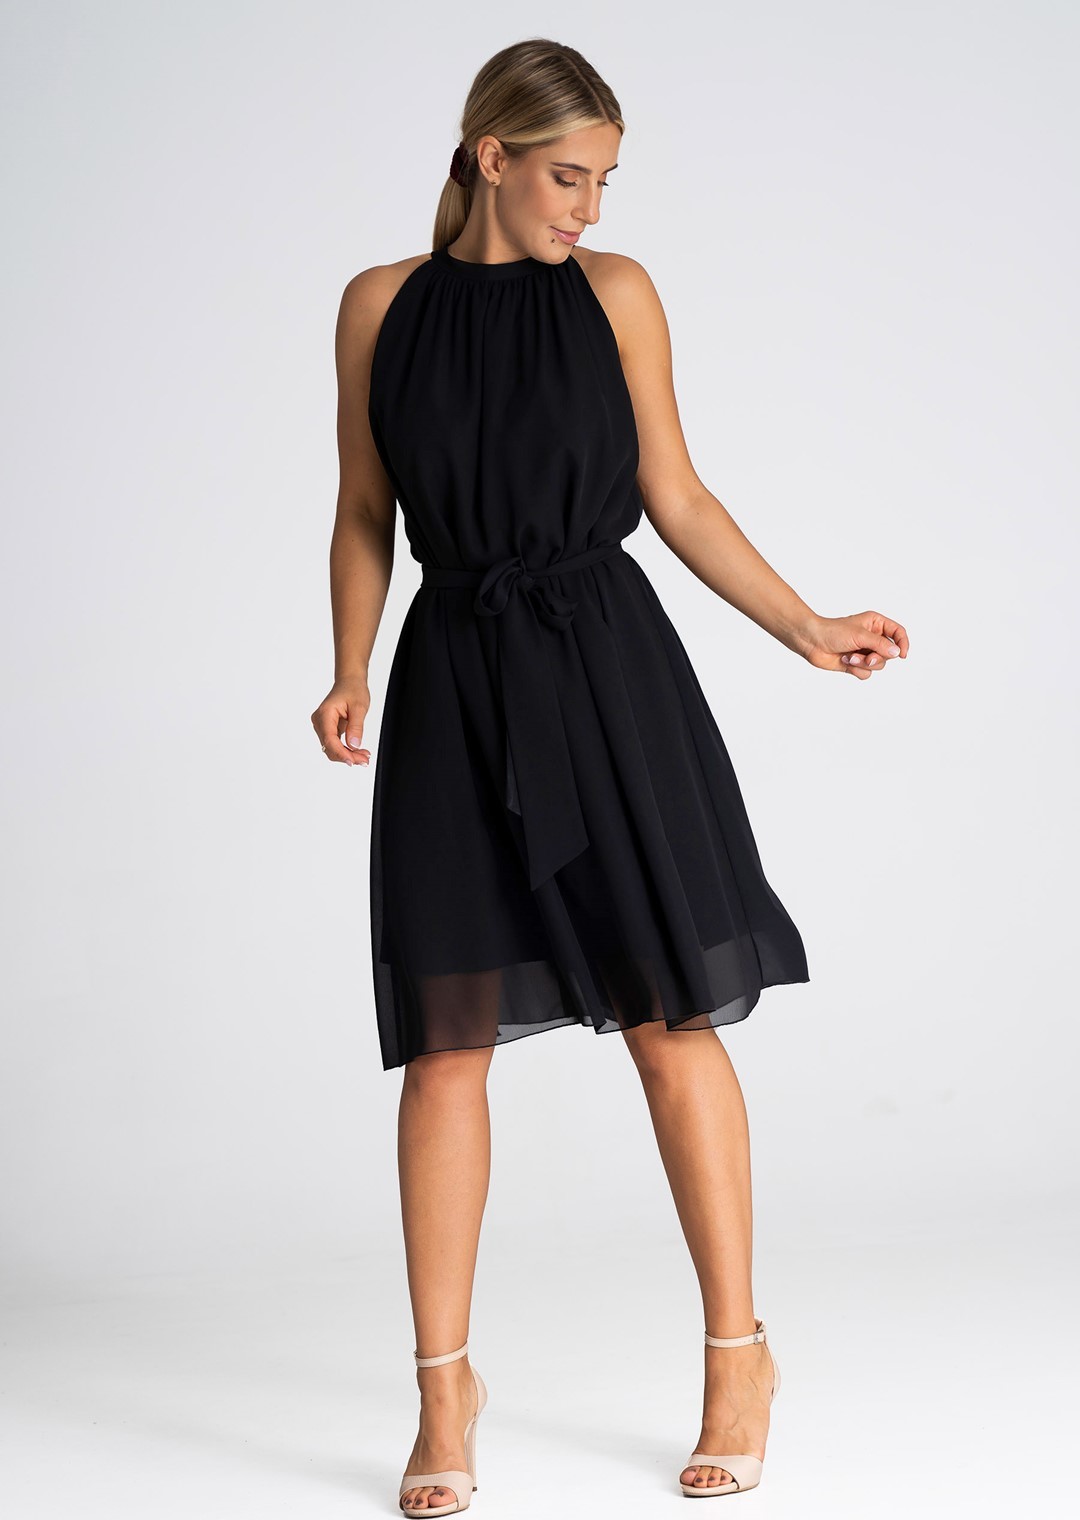 Černé šifonové šaty s mašlí M958 black Velikost: L/XL